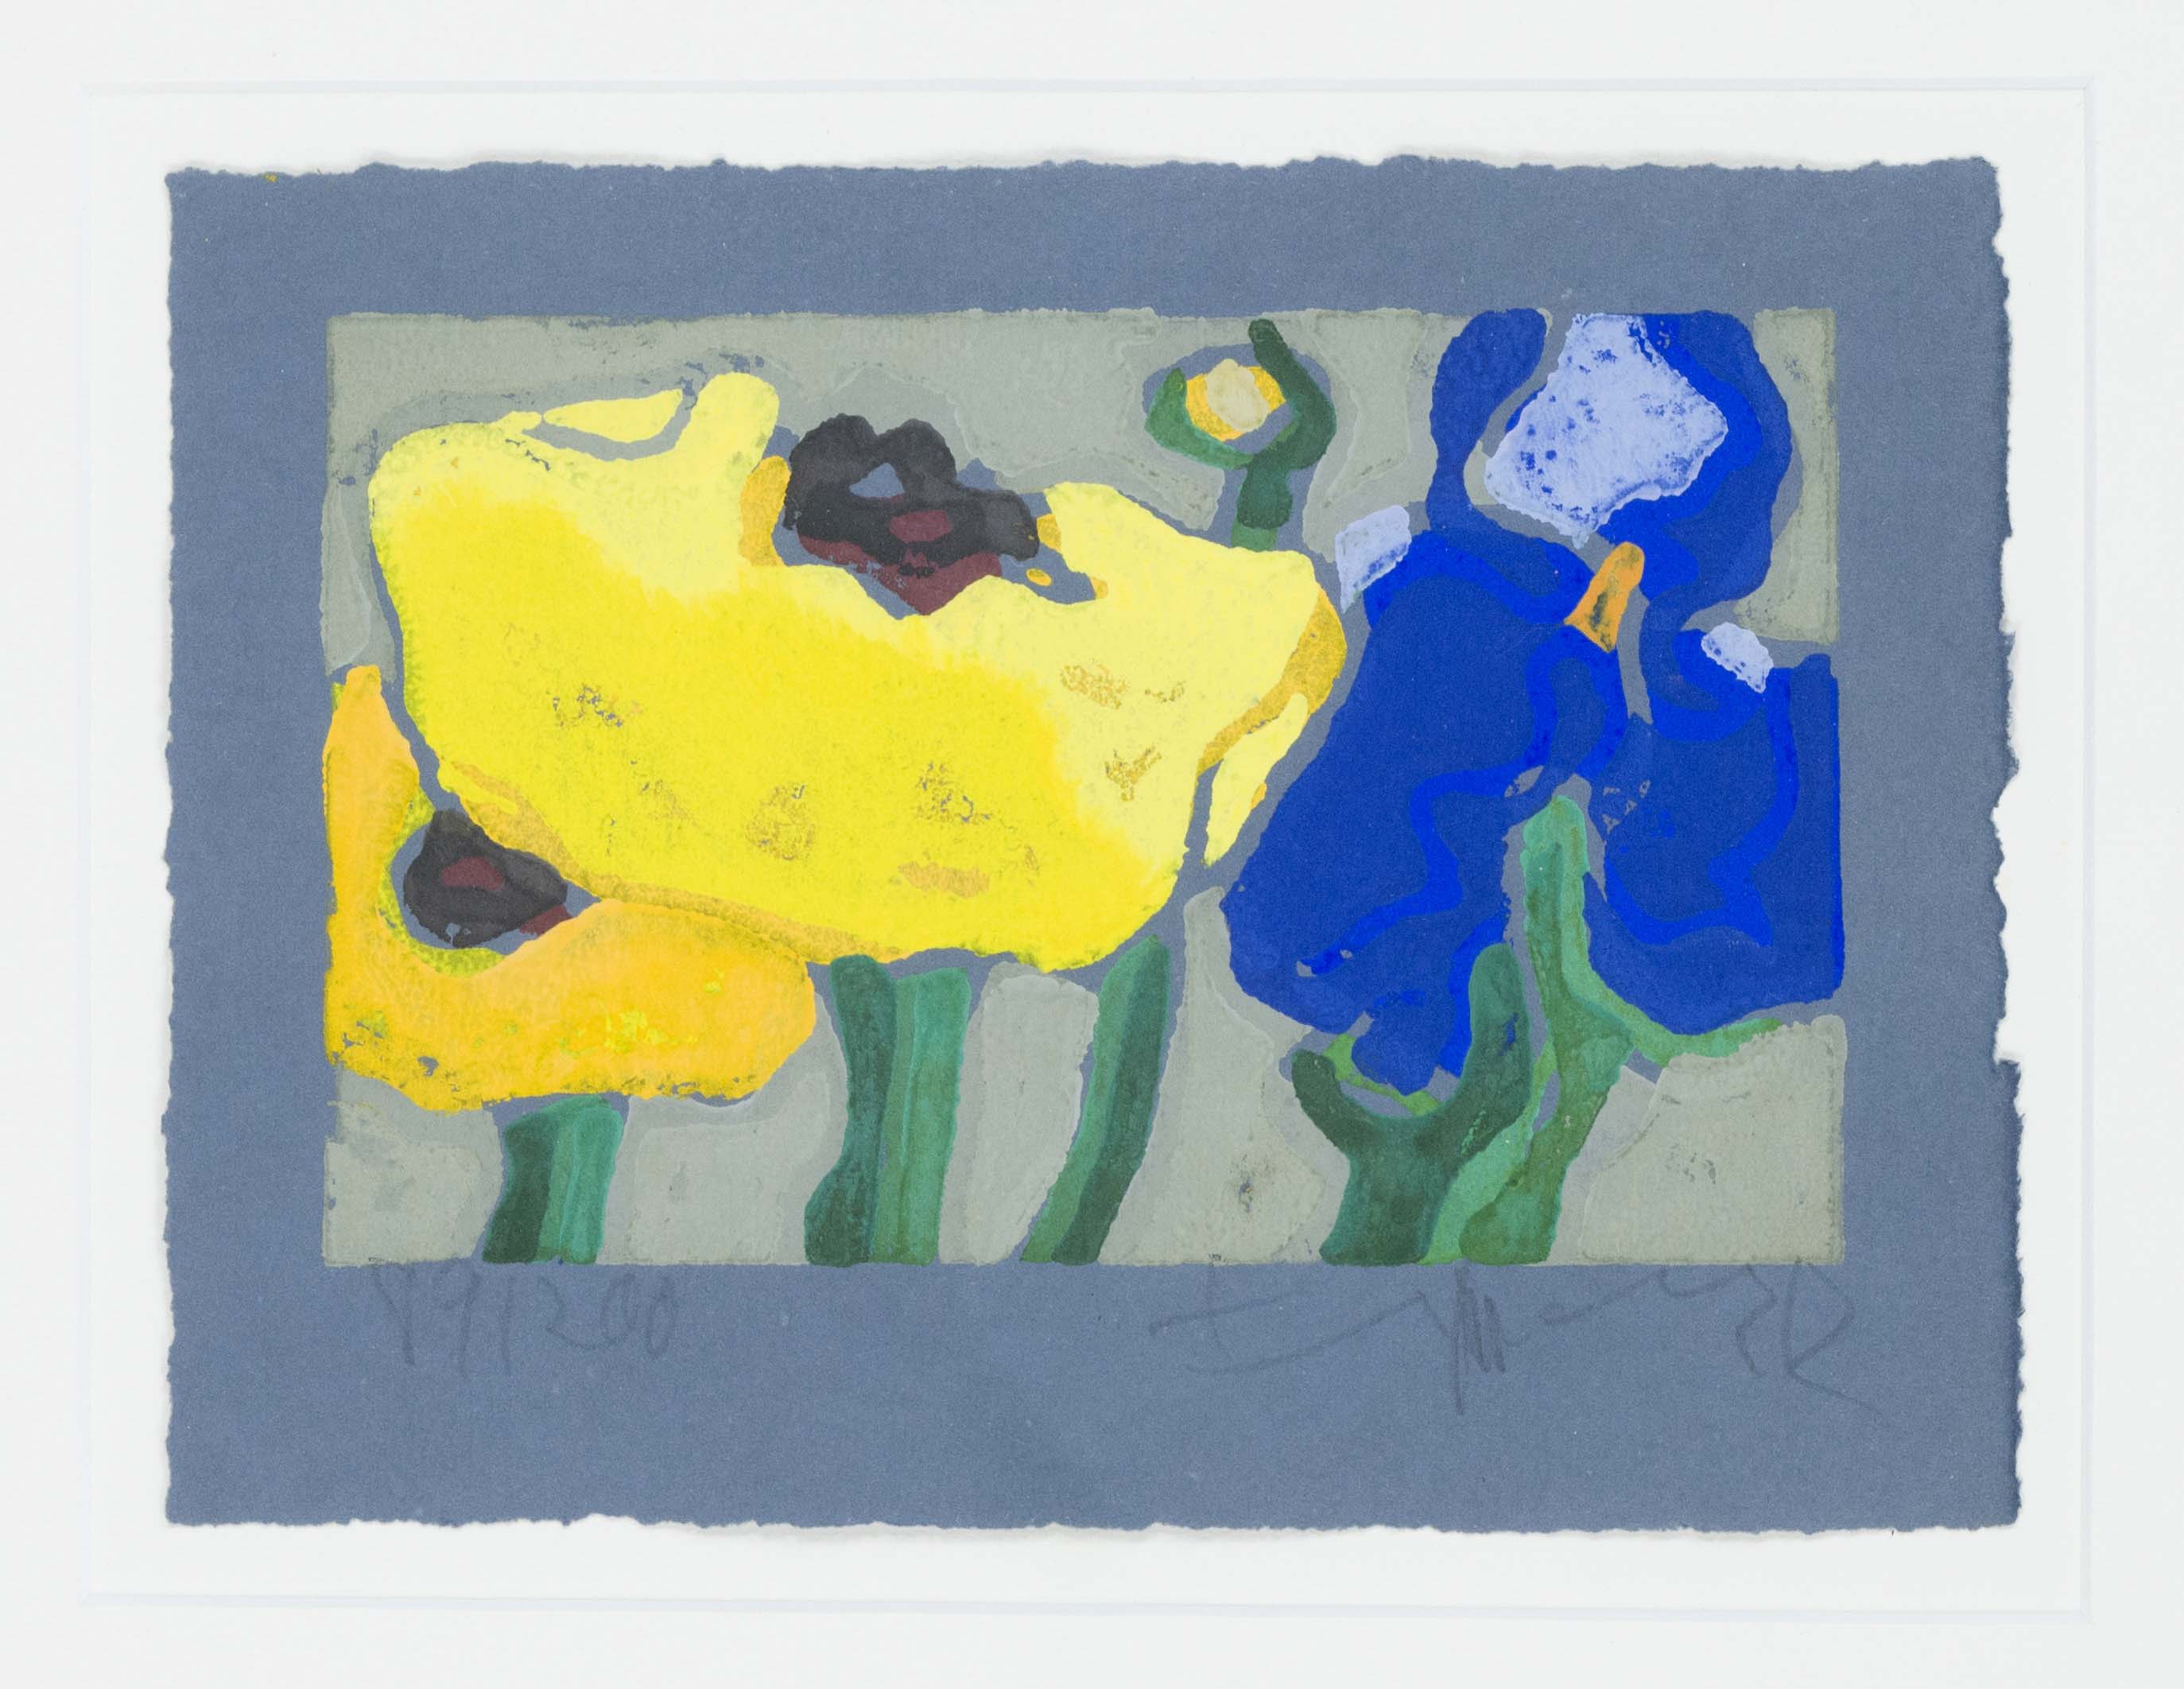 Klaus Fussmann (*1938), Iris und gelber Mohn, 2002, color linoleum cut on blue laid paper, signed